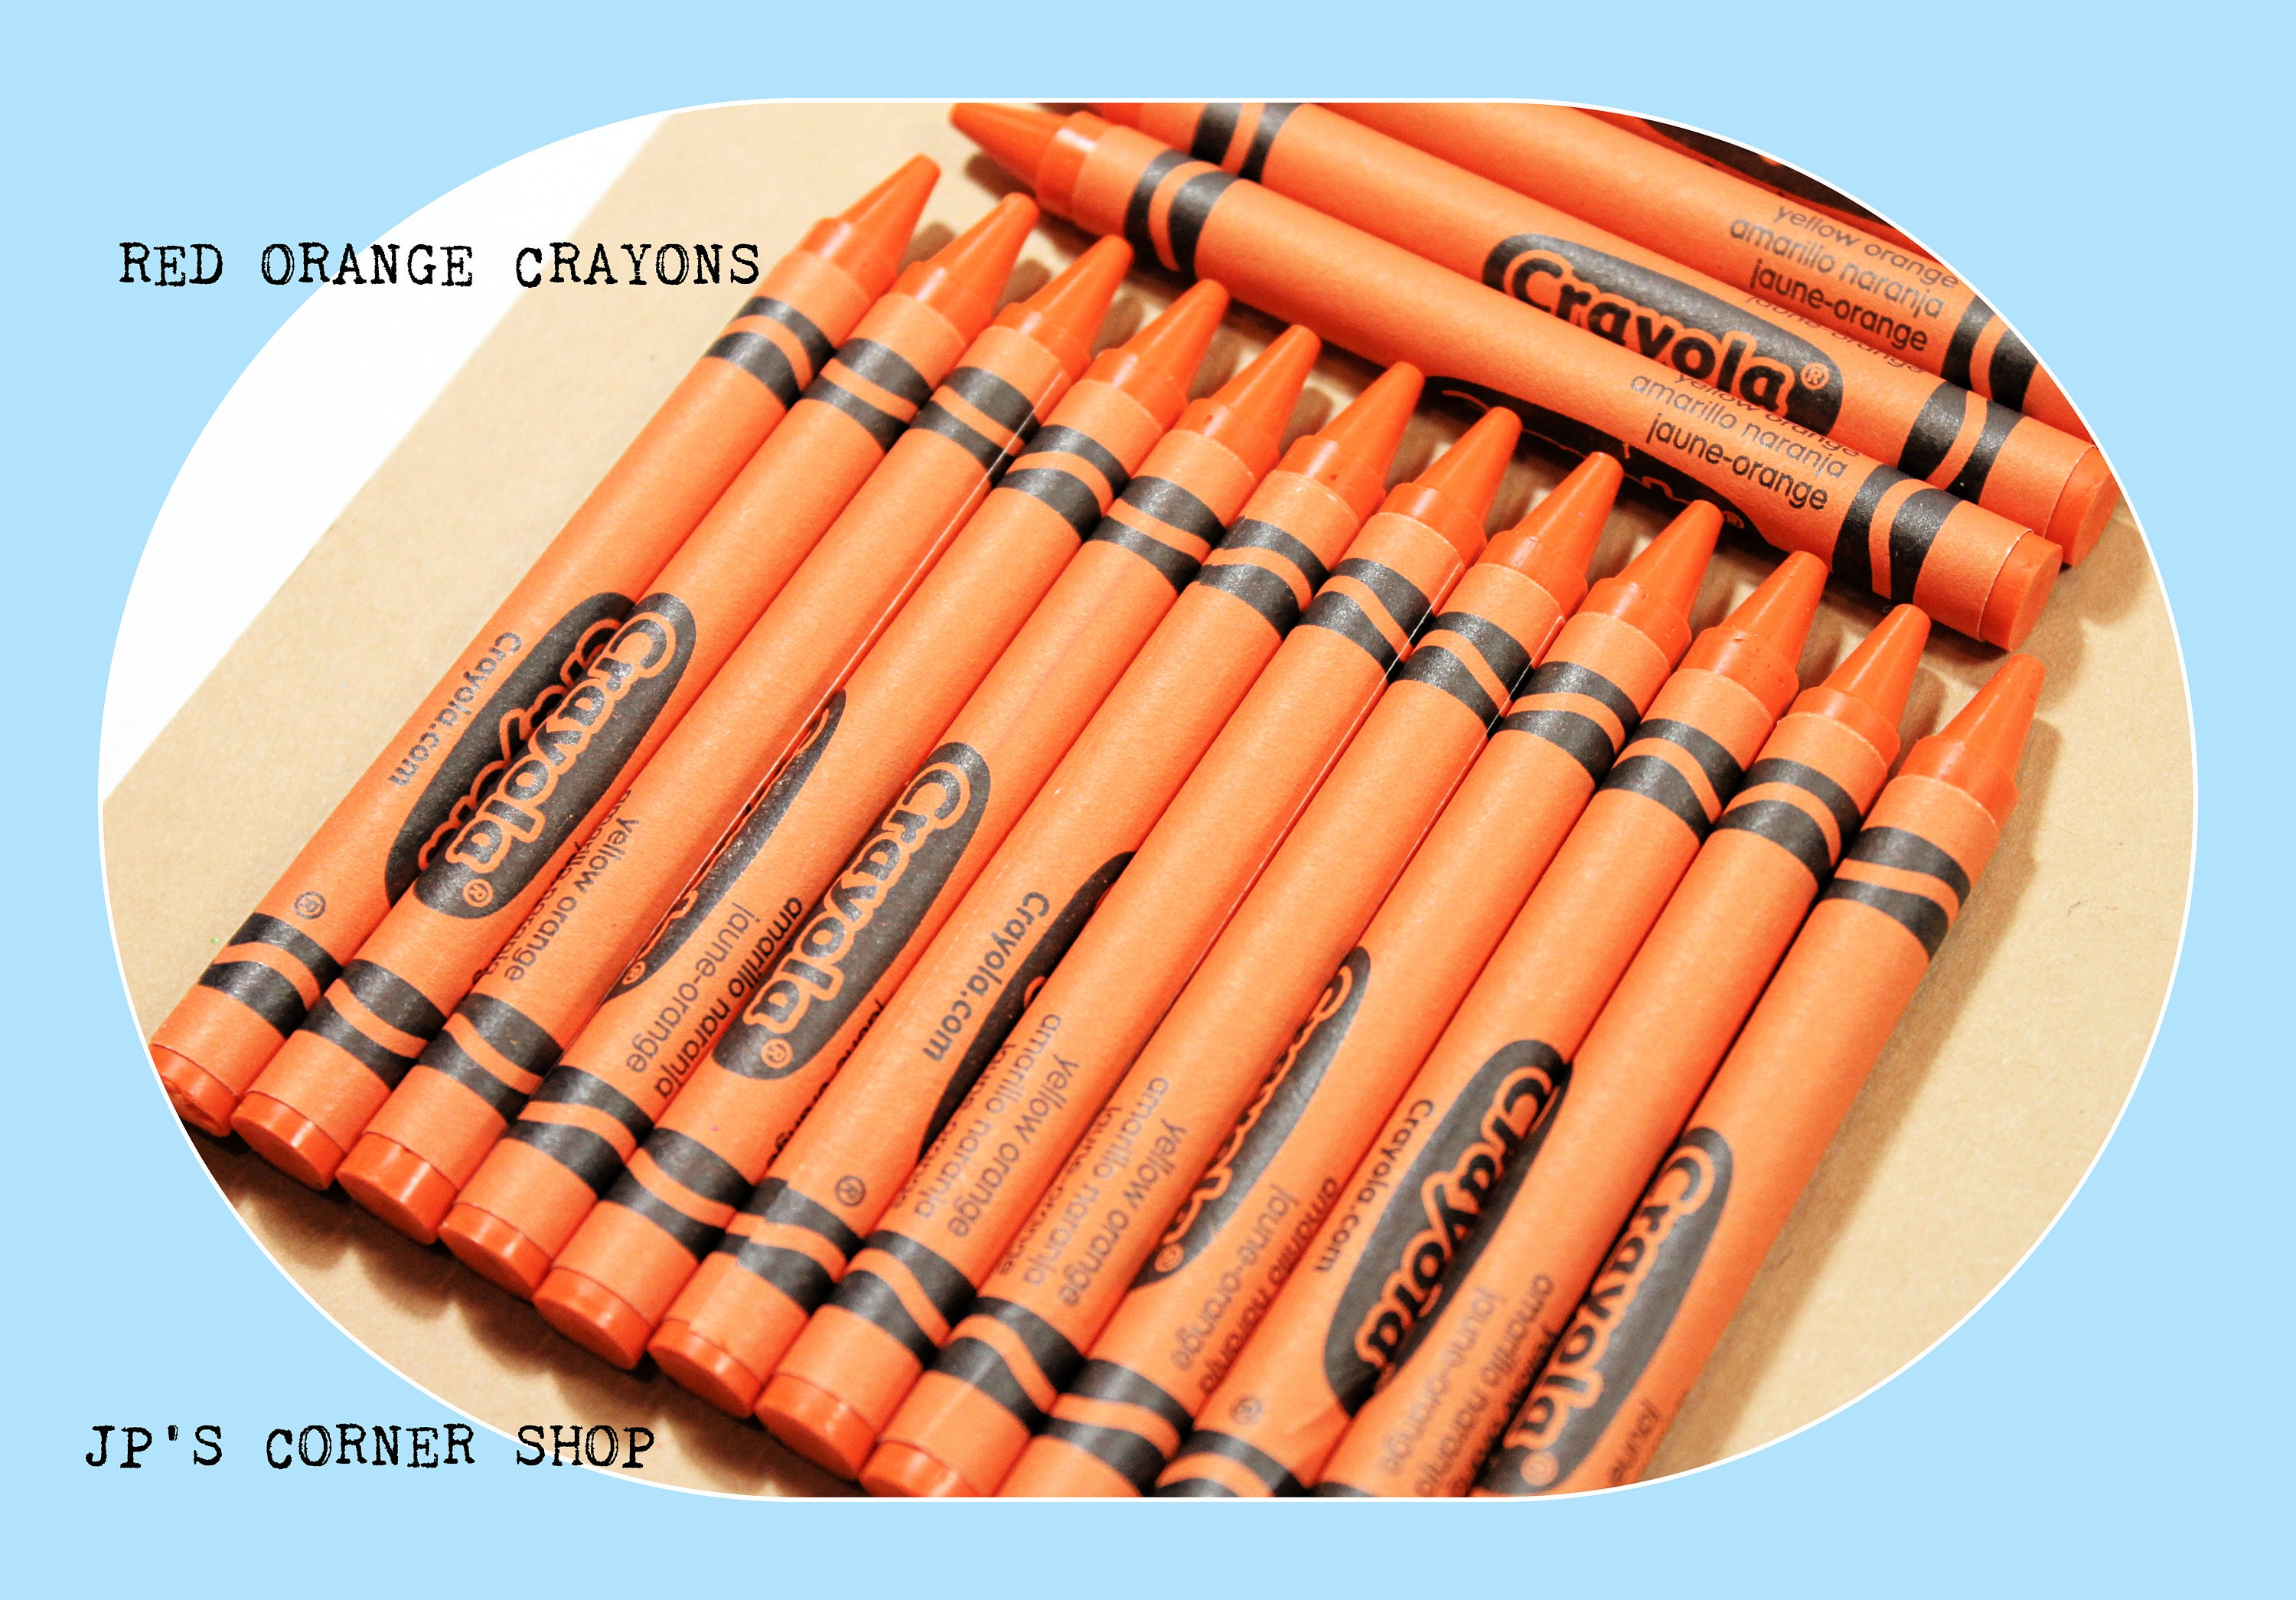 Bluetiful Crayons 45 Crayons Crayola Crayons Bulk Crayons Refill